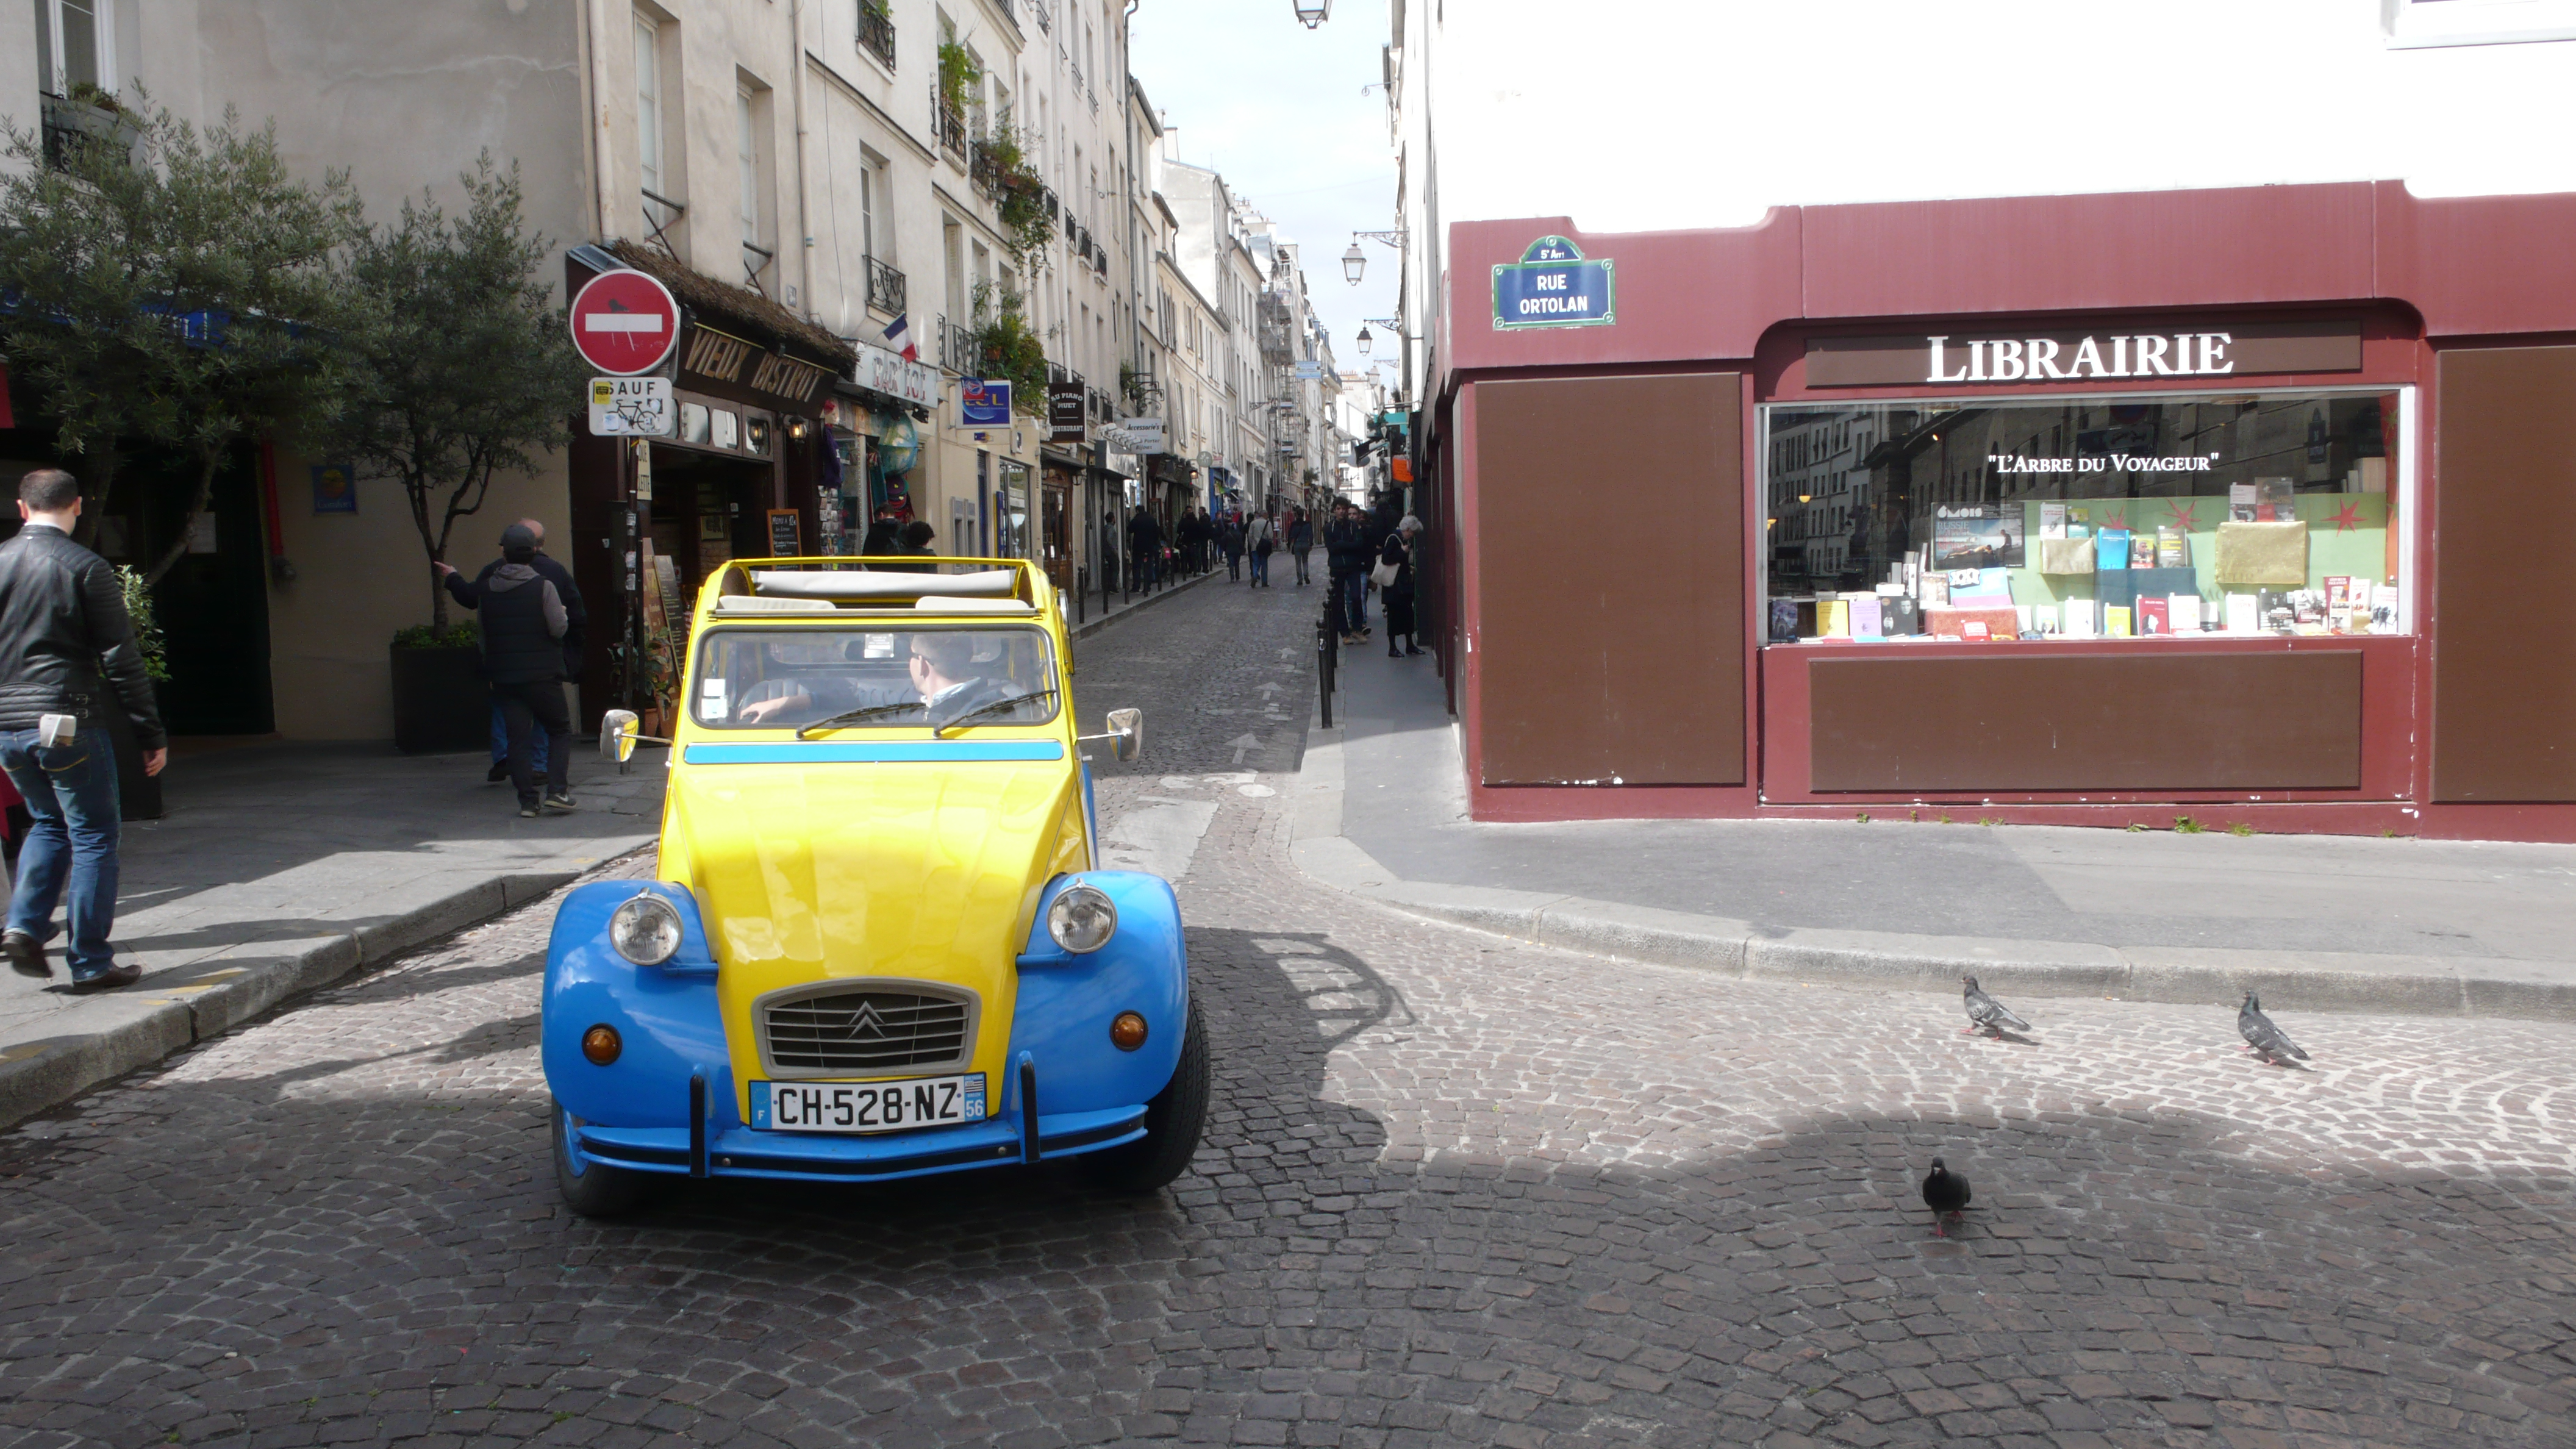 2CV Paris Tour - Visit Paris by 2CV! Rue Mouffetard